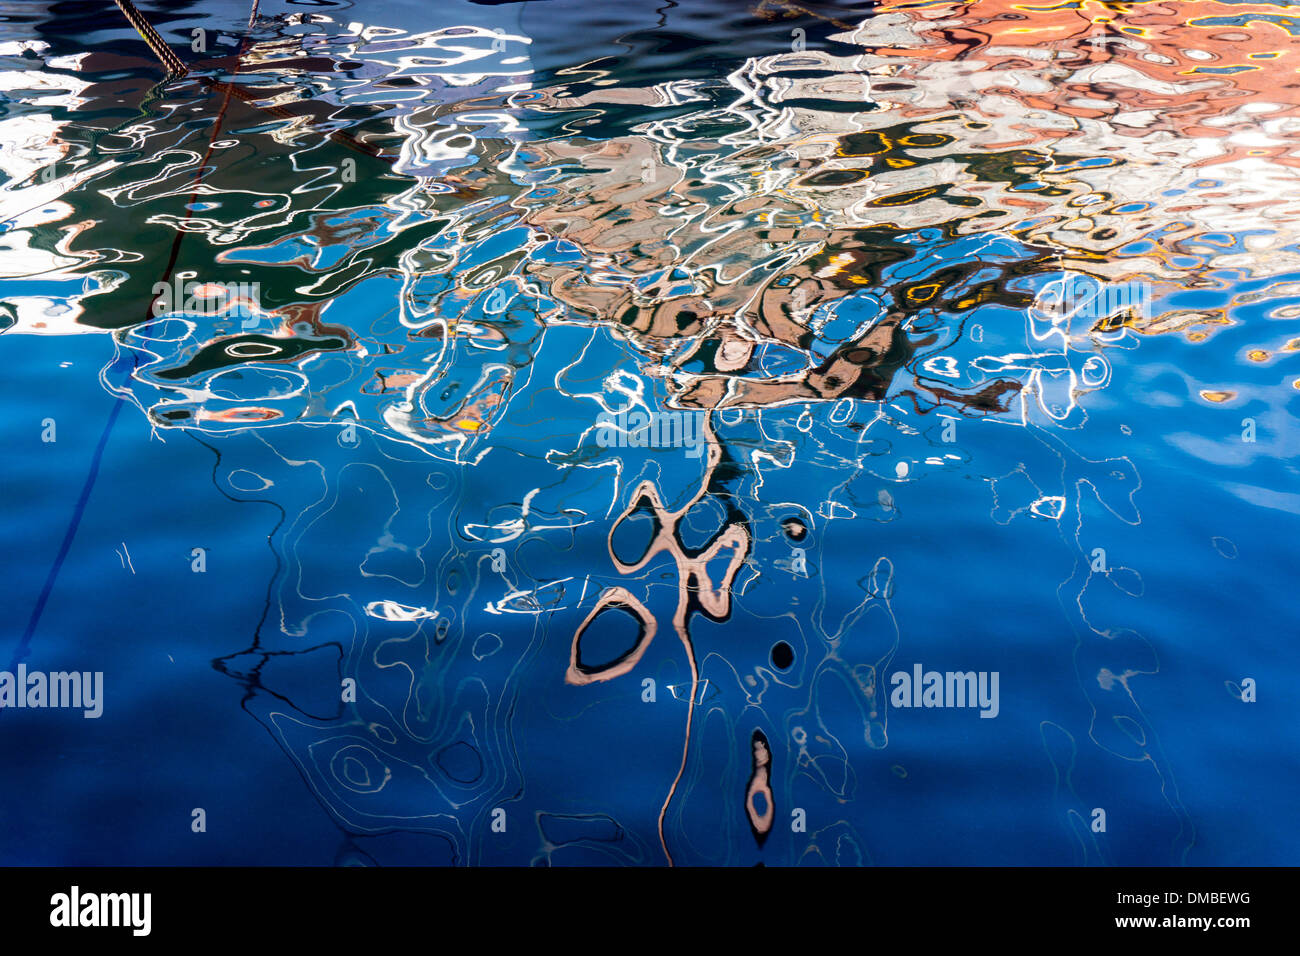 Le riflessioni della barca in acqua blu, increspature, calma Foto Stock